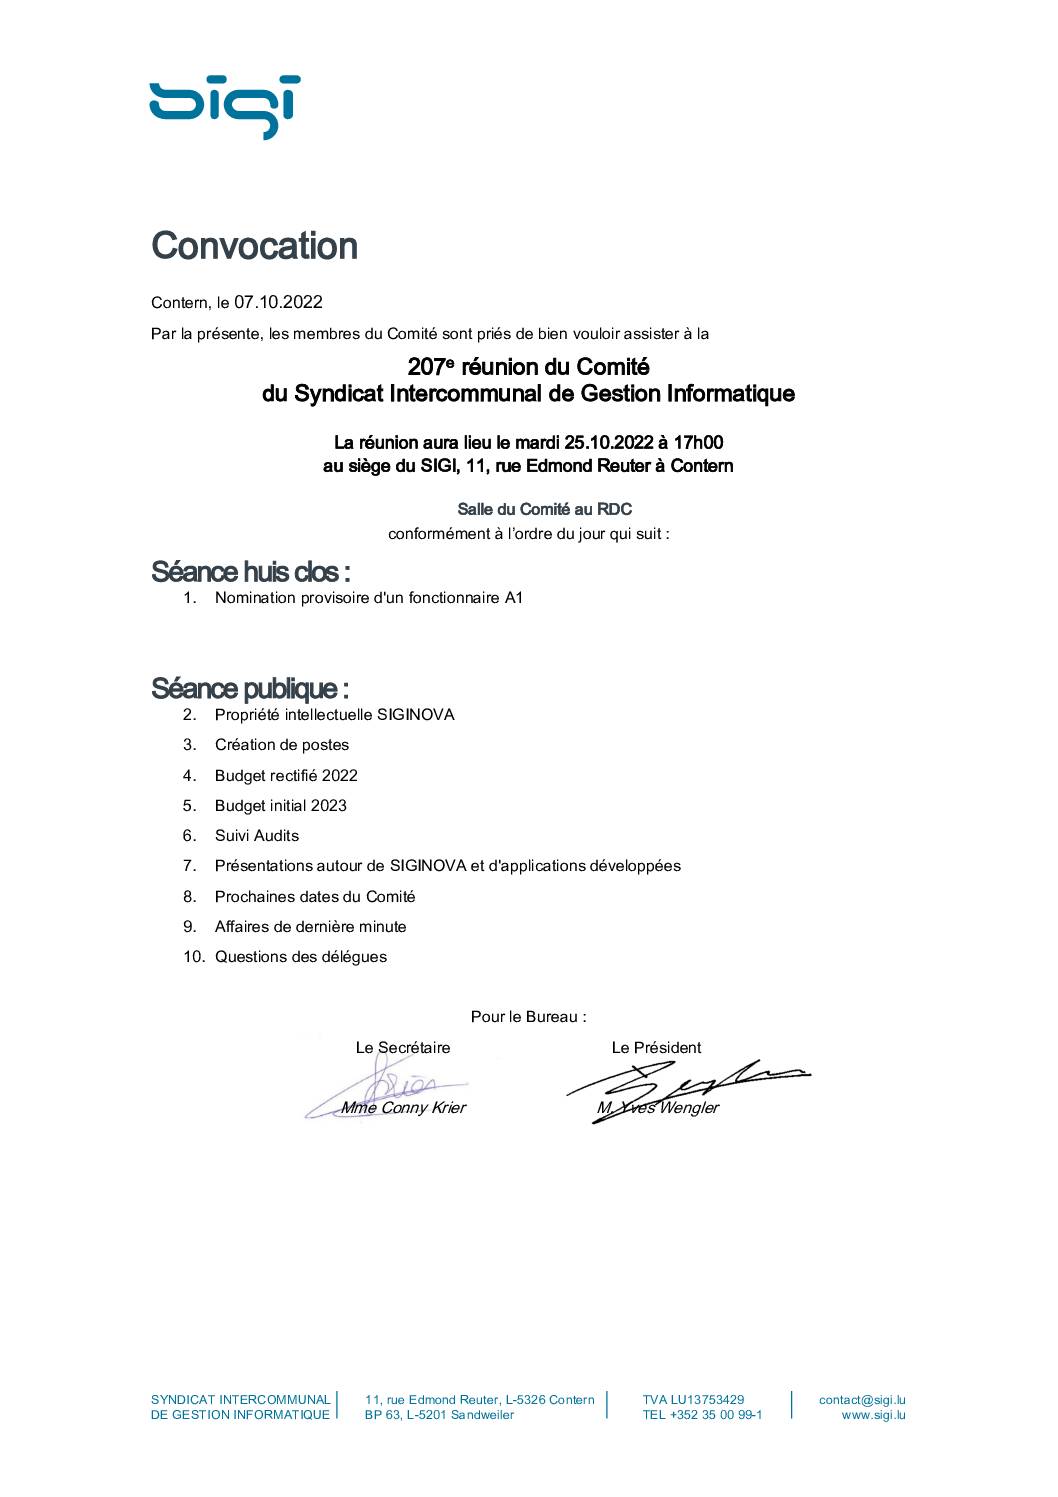 Convocation comité SIGI 25.10.2022